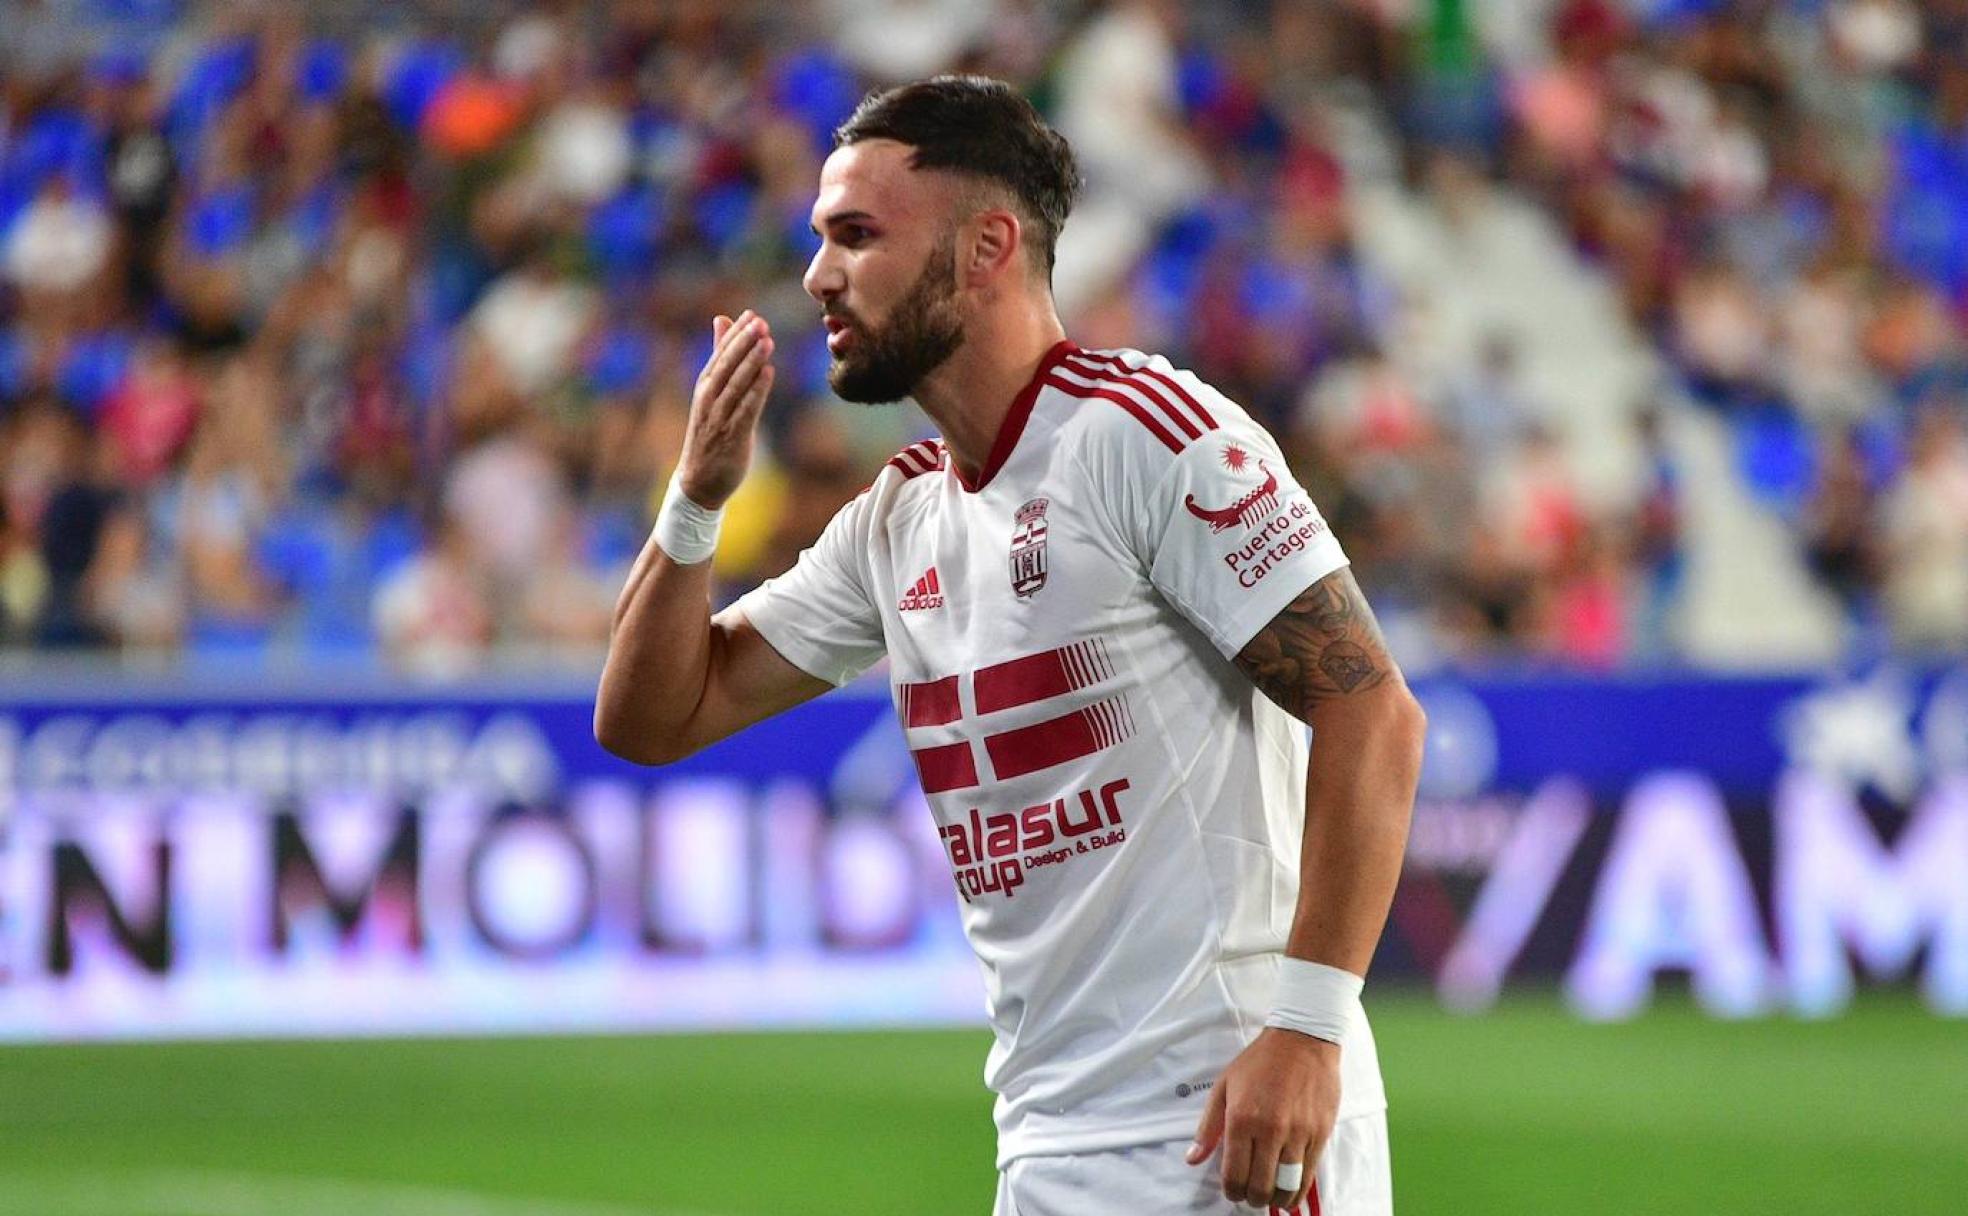 El albanés Sadiku celebra uno de sus cinco goles hasta el momento mandando un beso a la cámara. 